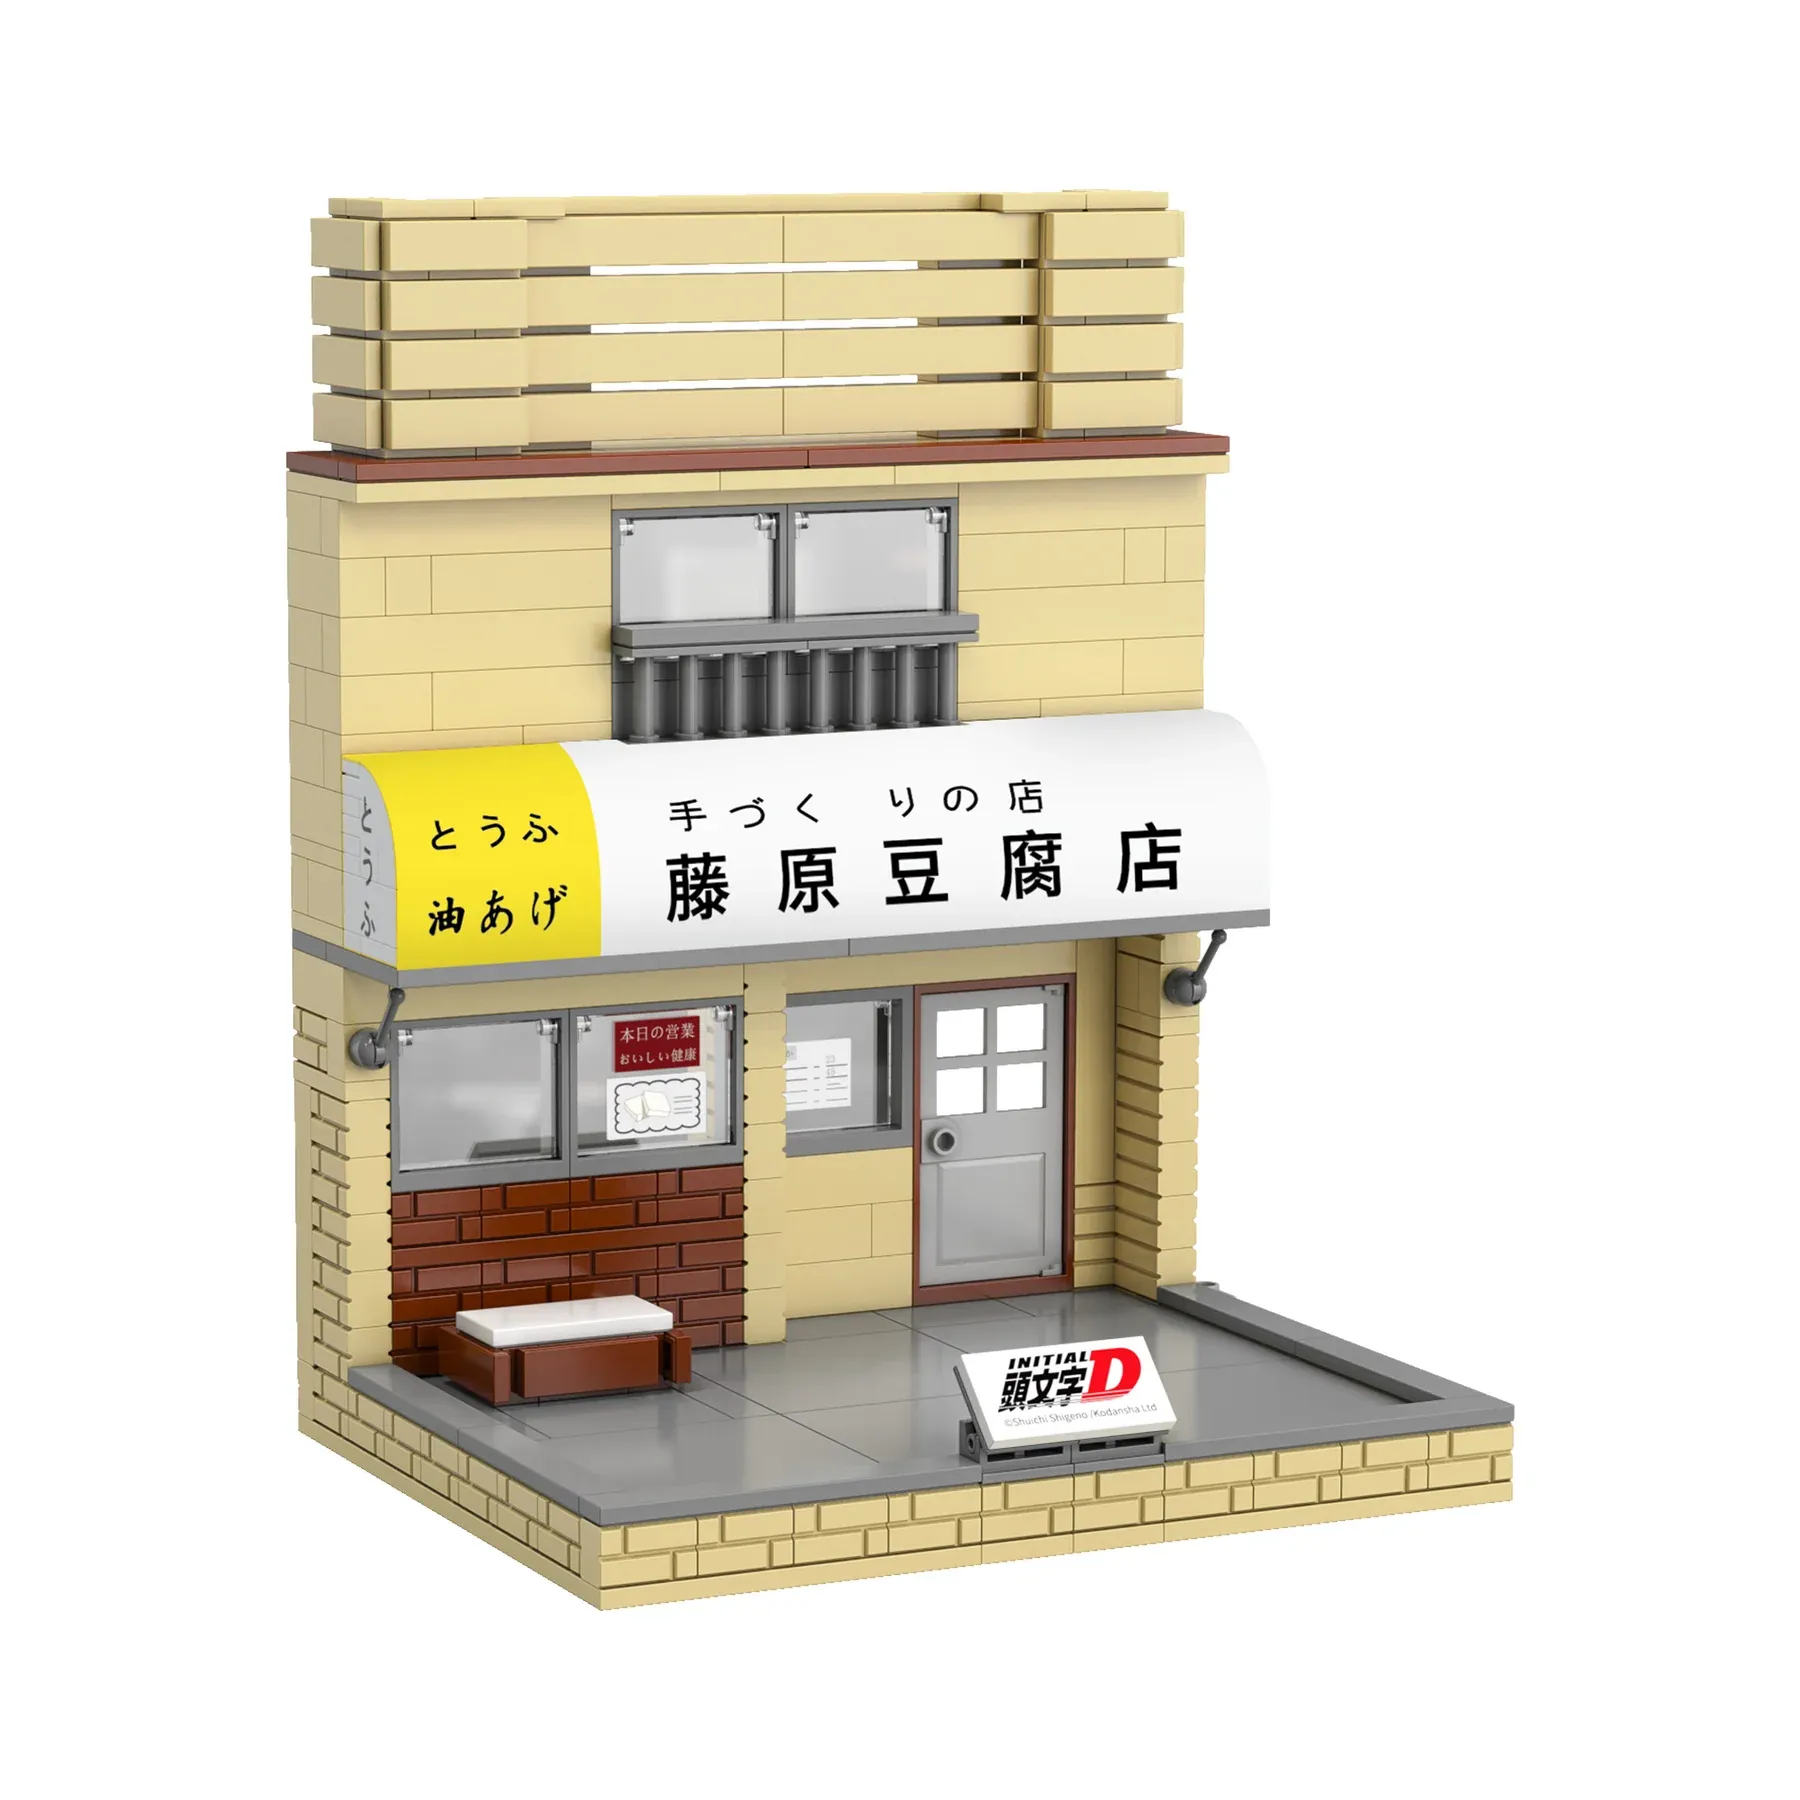 Initial-D Fujiwara's Tofu Shop Gallery